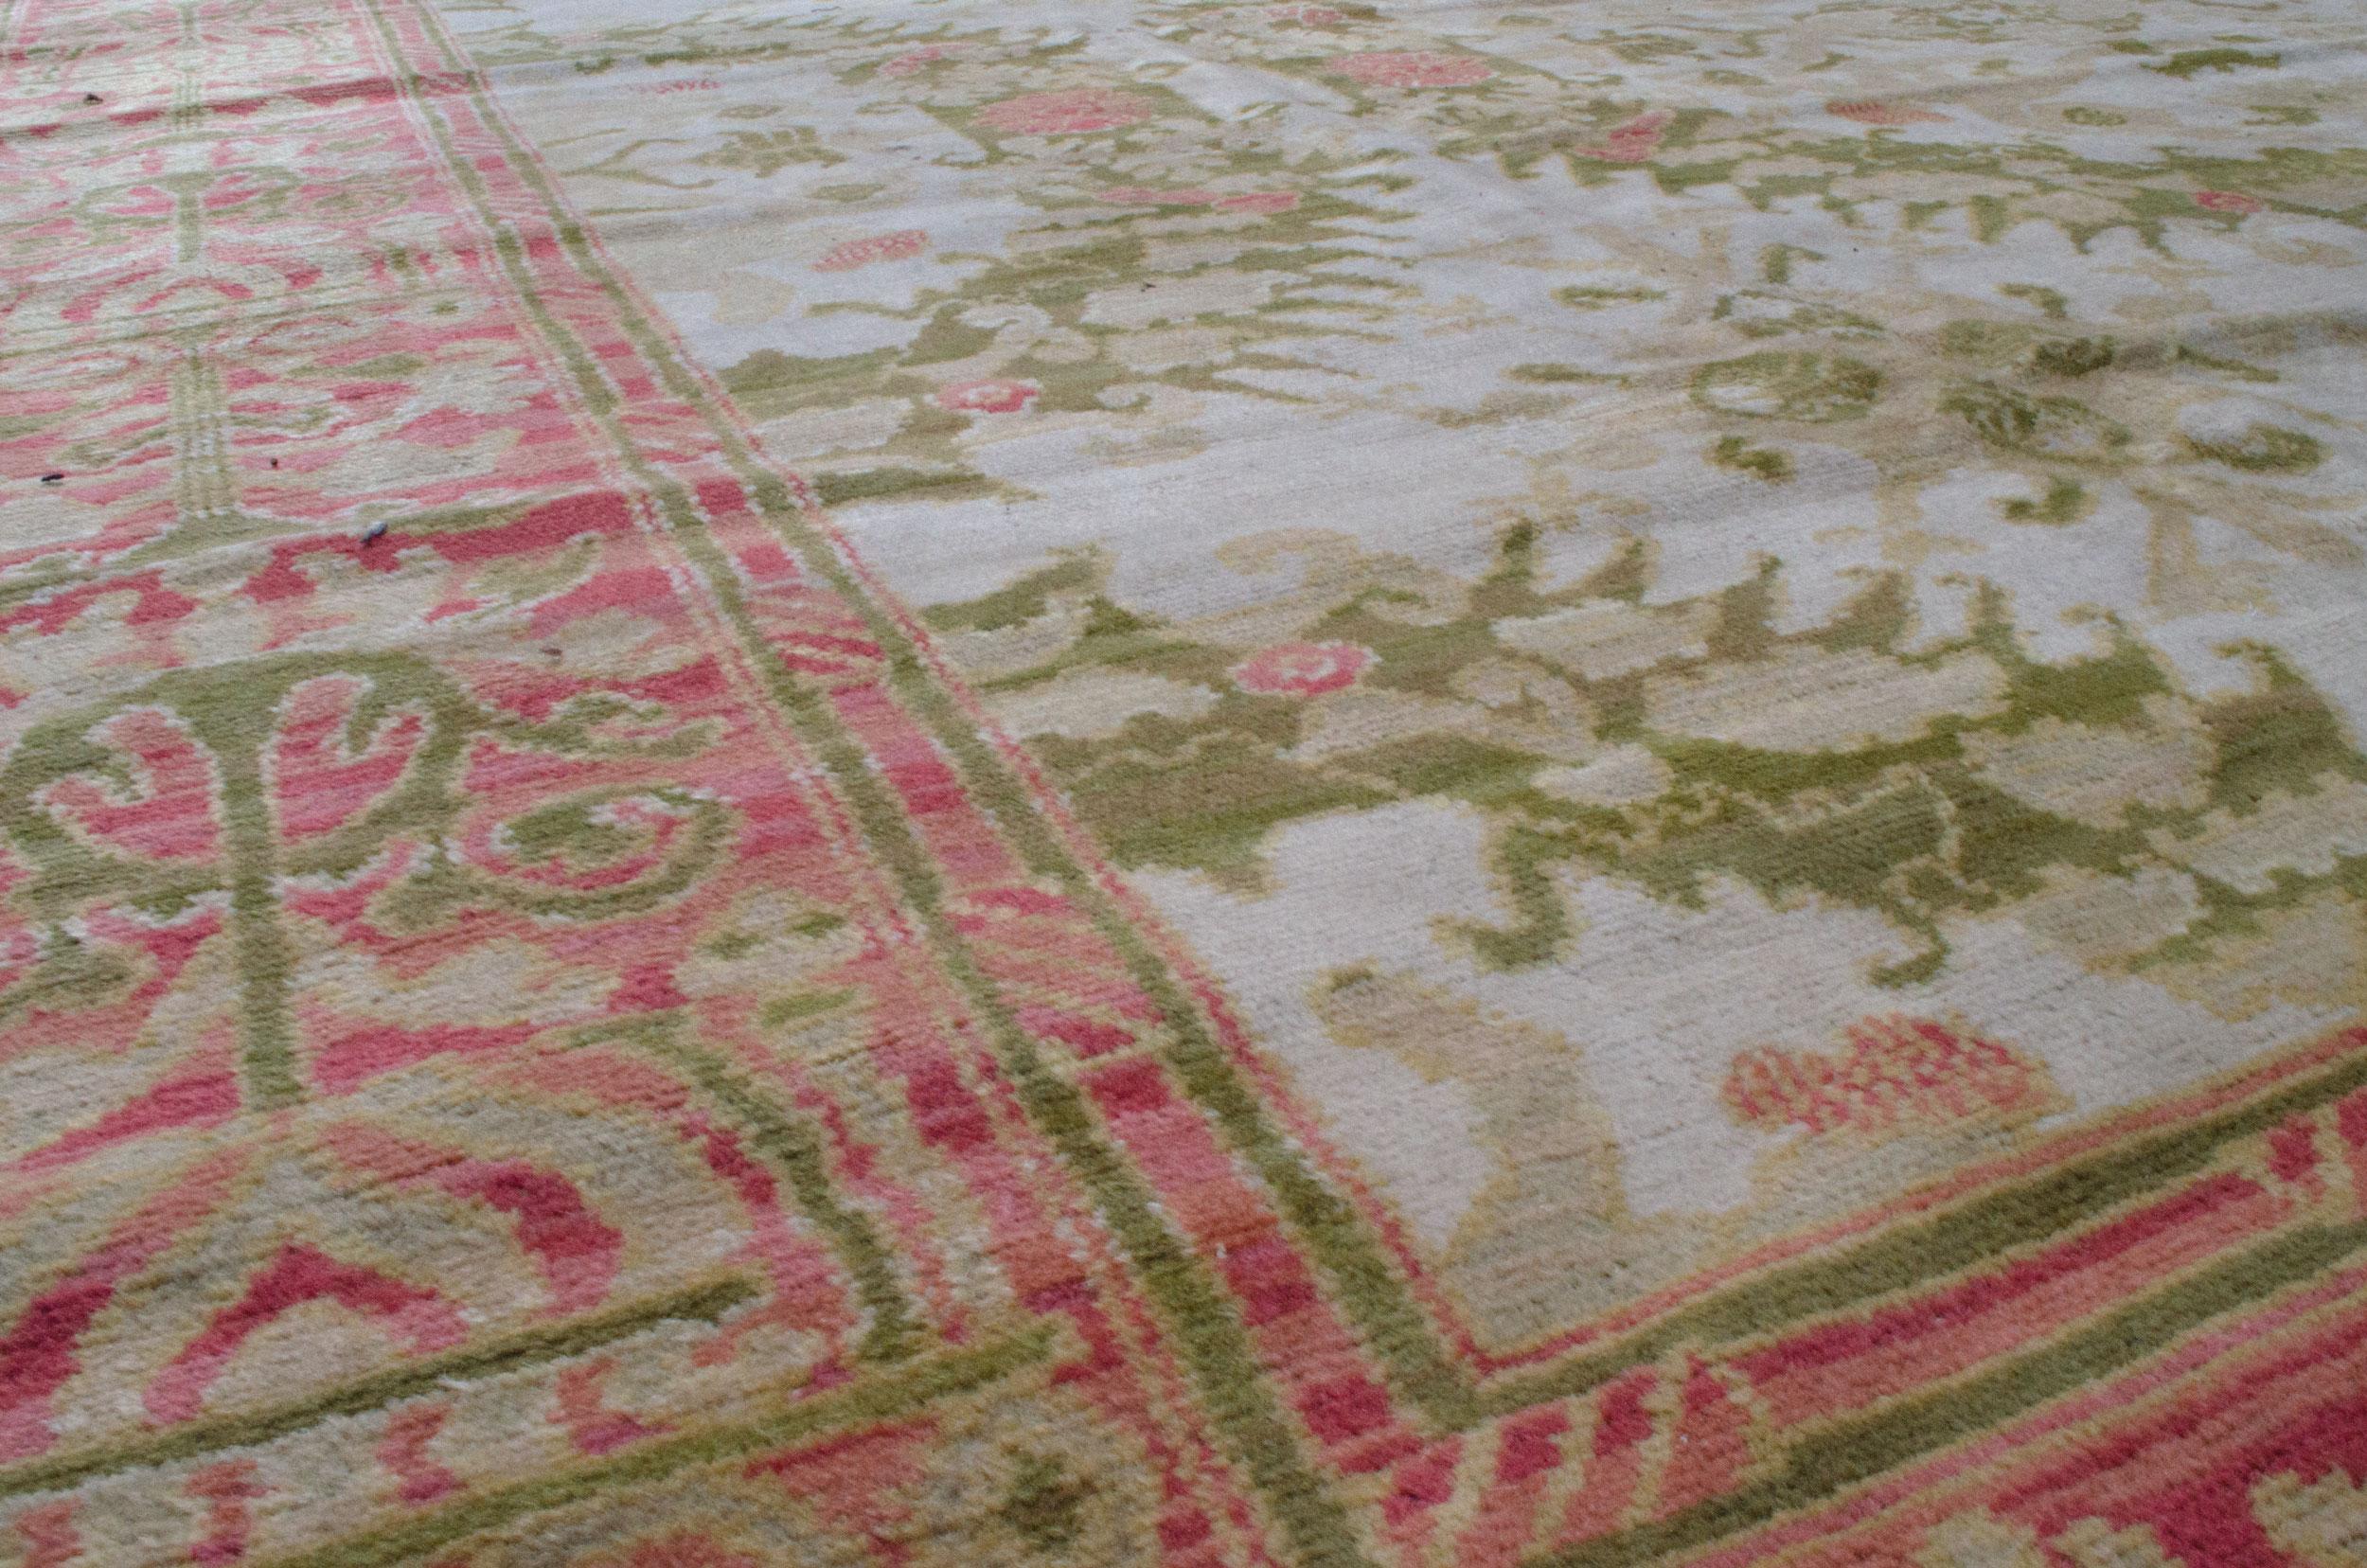 Ce tapis exquis du début du XXe siècle a été produit à Alcaraz, en Espagne. Ce tapis est un excellent exemple du mandat formel visant à développer un style d'art typiquement espagnol. Il s'agit d'un motif allover de couleur crème et verte. La